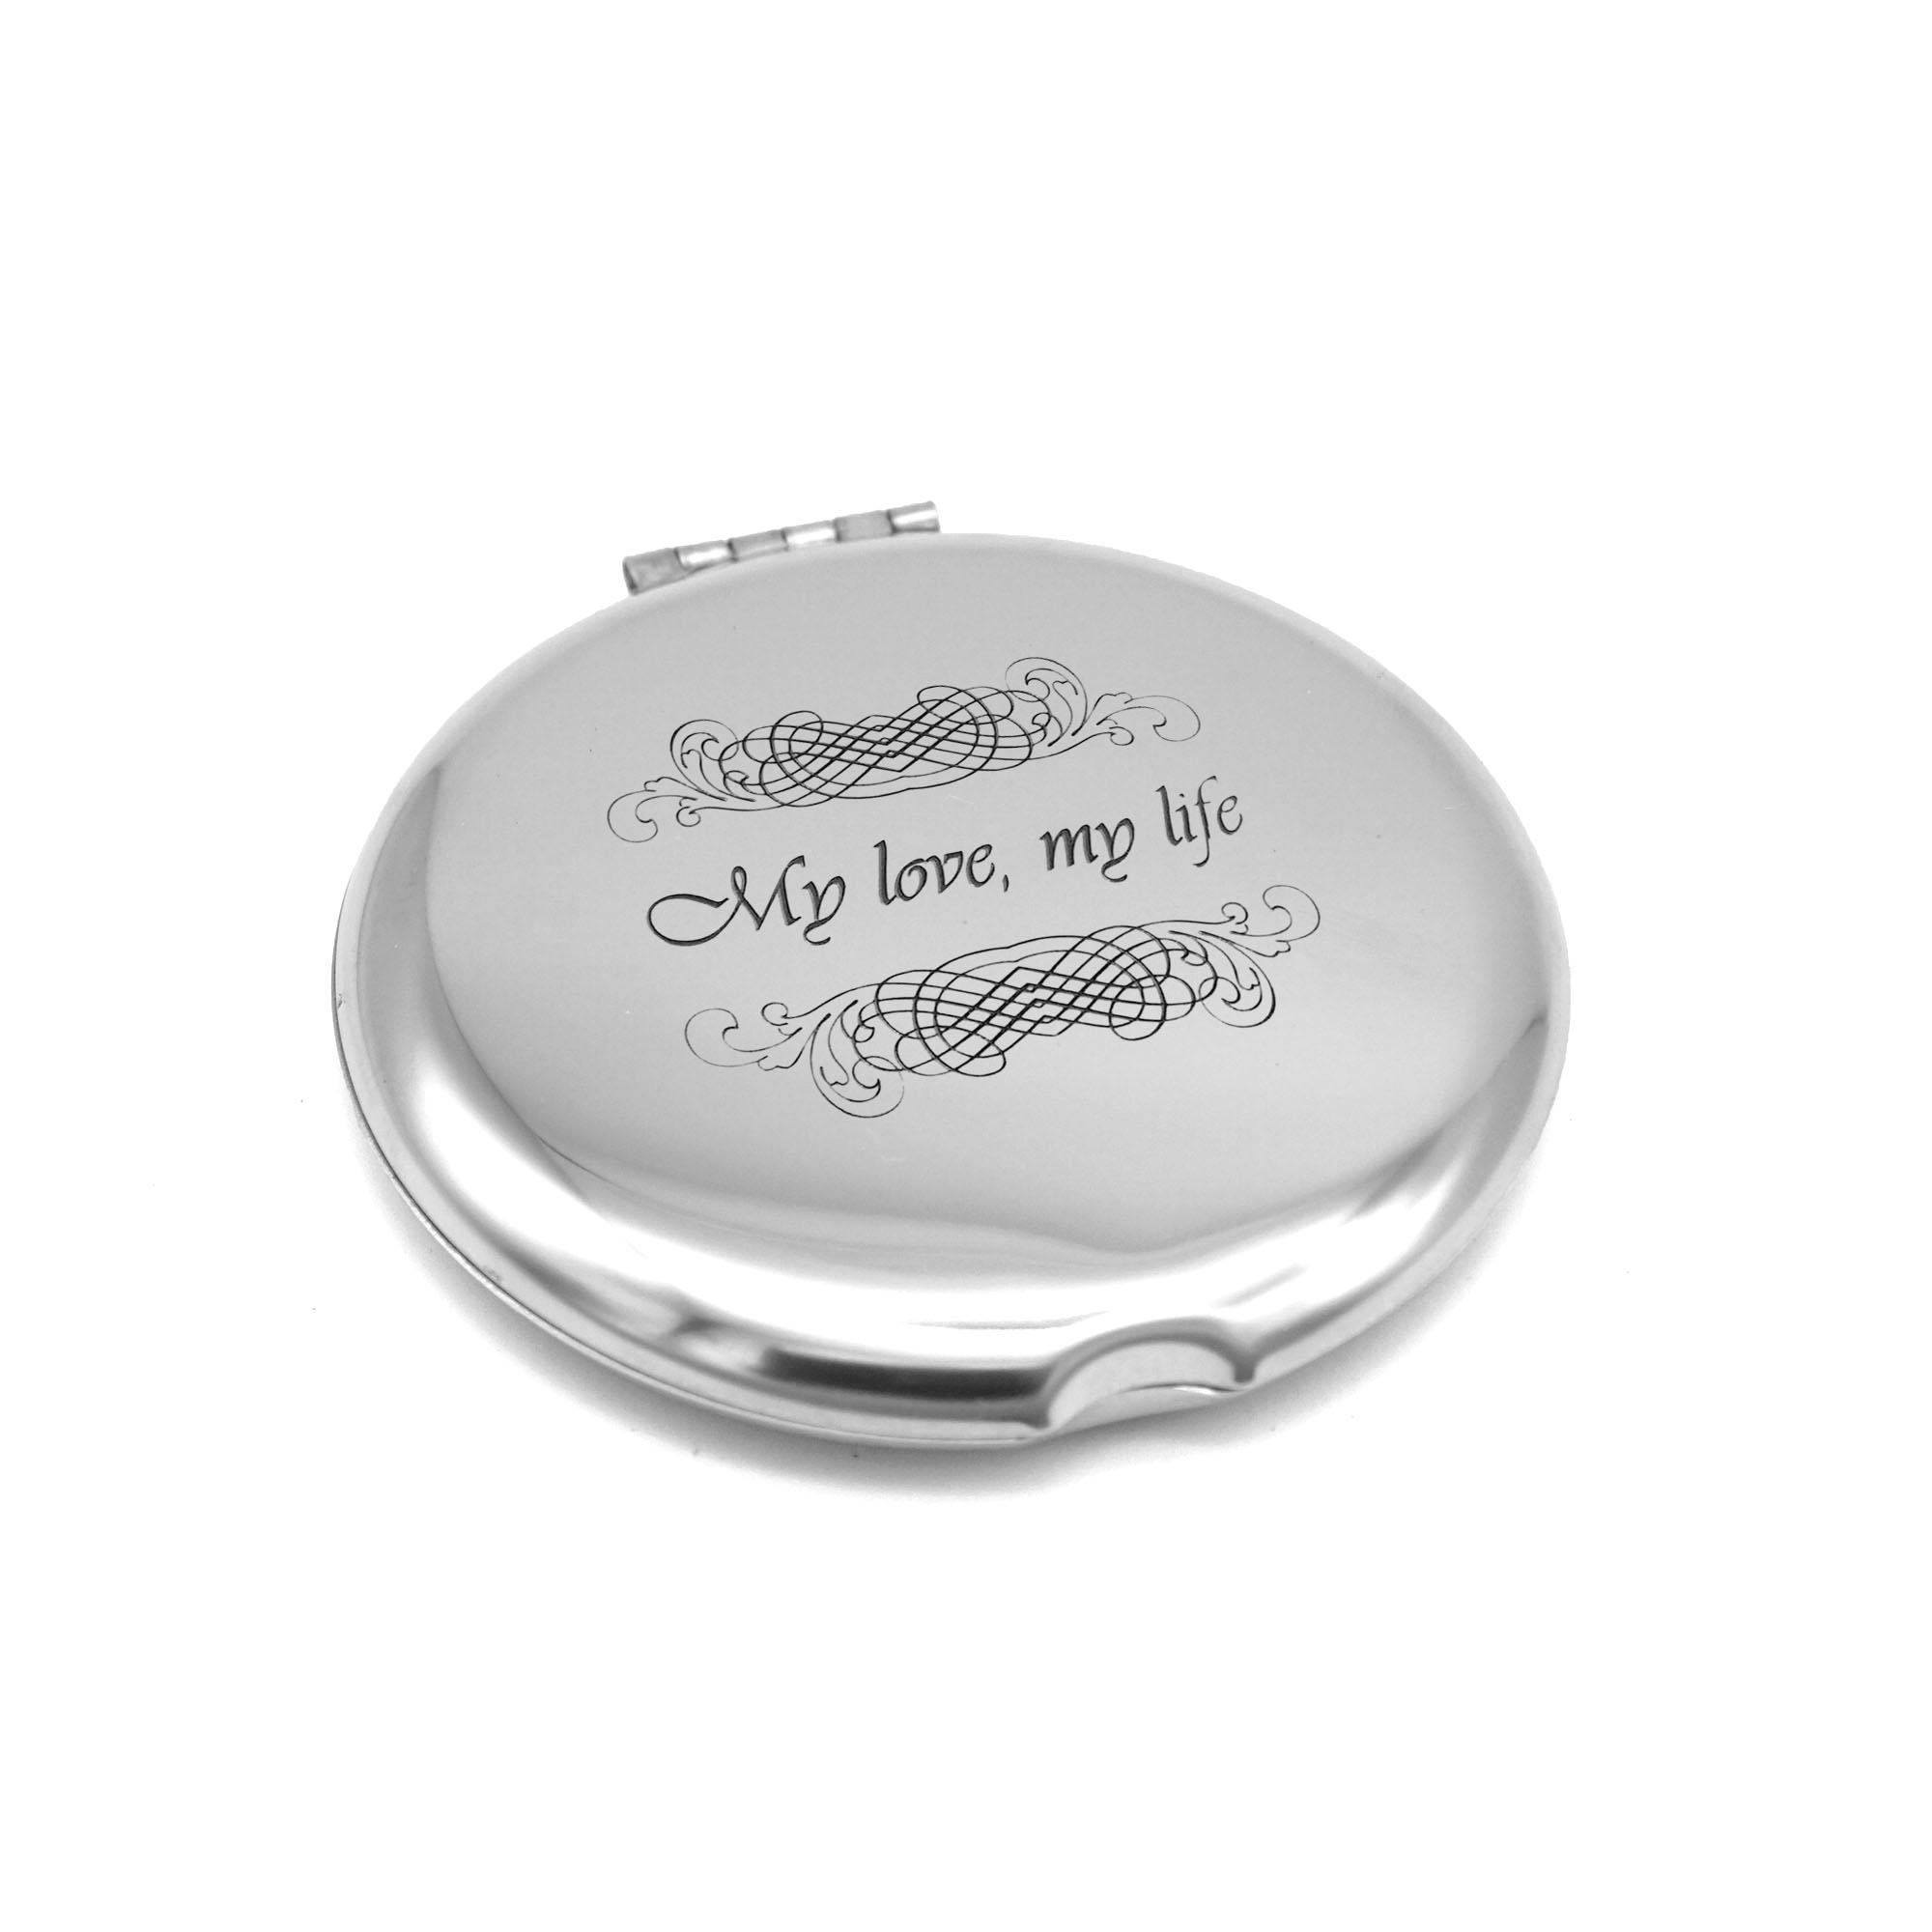  Schminkspiegel mit persönlicher Gravur - Edelstahl Taschenspiegel mit Lasergravur - Klappspiegel